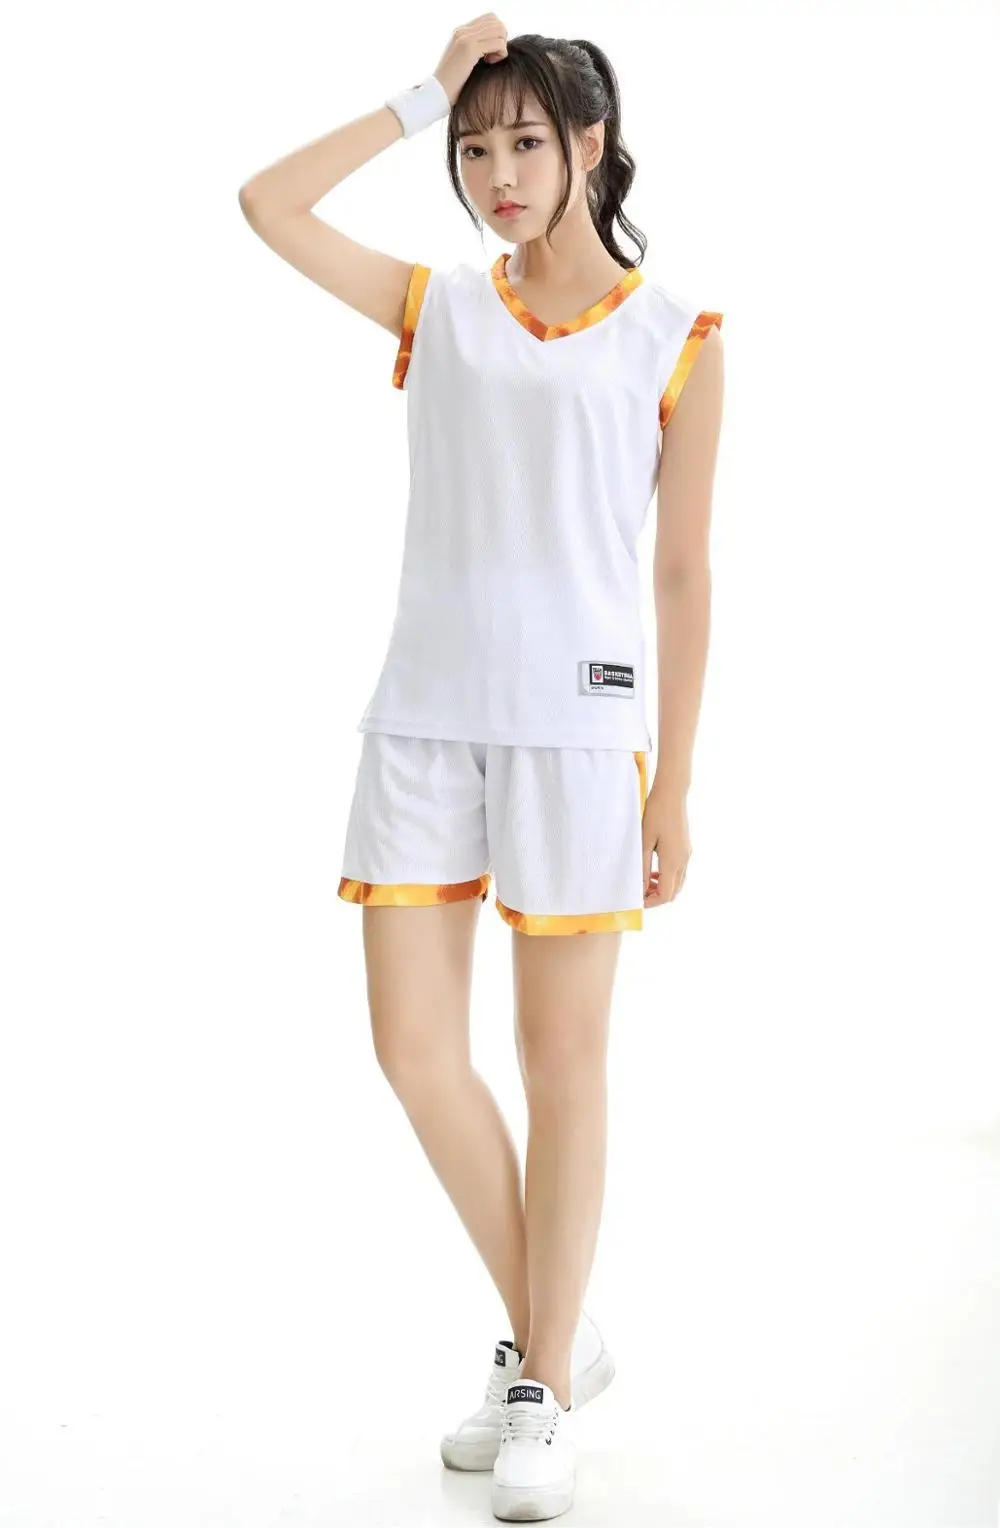 Женские баскетбольные Джерси командные спортивные костюмы, одежда для студентов, дешевые студенческие баскетбольные тренировочные костюмы для девочек, Набор сделай сам, можно изготовить на заказ - Цвет: White Not Printing